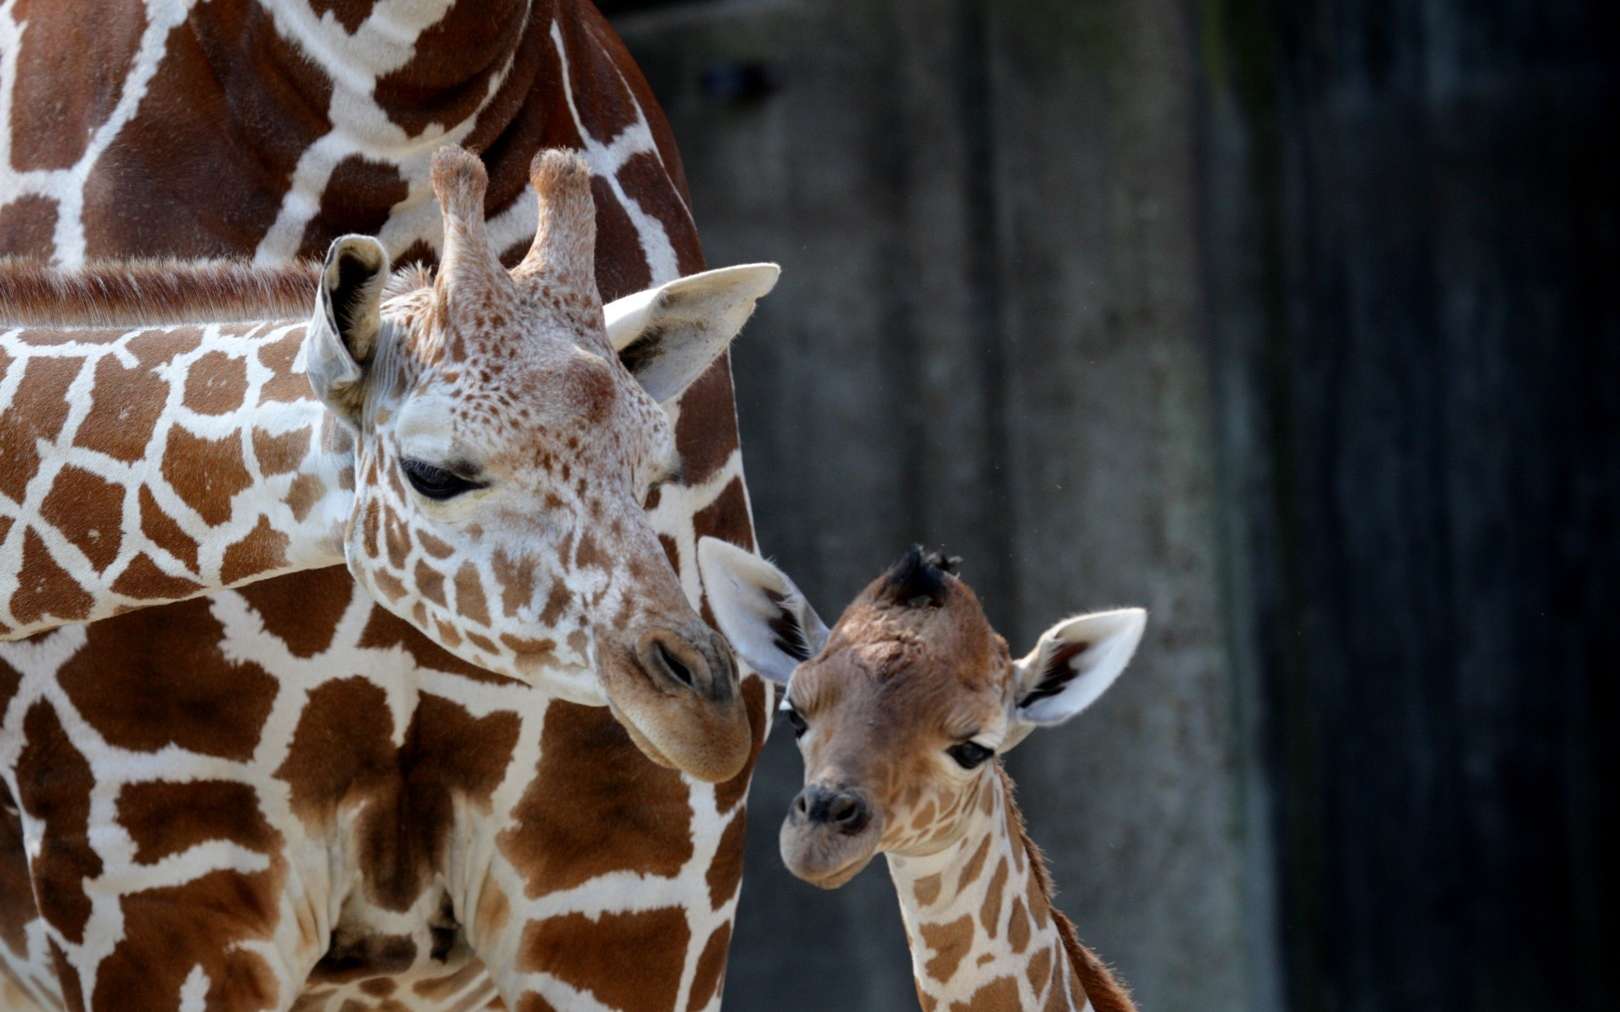 Le projet brésilien Embrapa prévoit de cloner 8 espèces animales en voie de disparition au Brésil. Ils espèrent toutefois rapidement pouvoir cloner les girafes et éléphants d'Afrique qui font parties des espèces gravement en danger. © Frank Peter, Flickr CC by-nc-nd-2.0